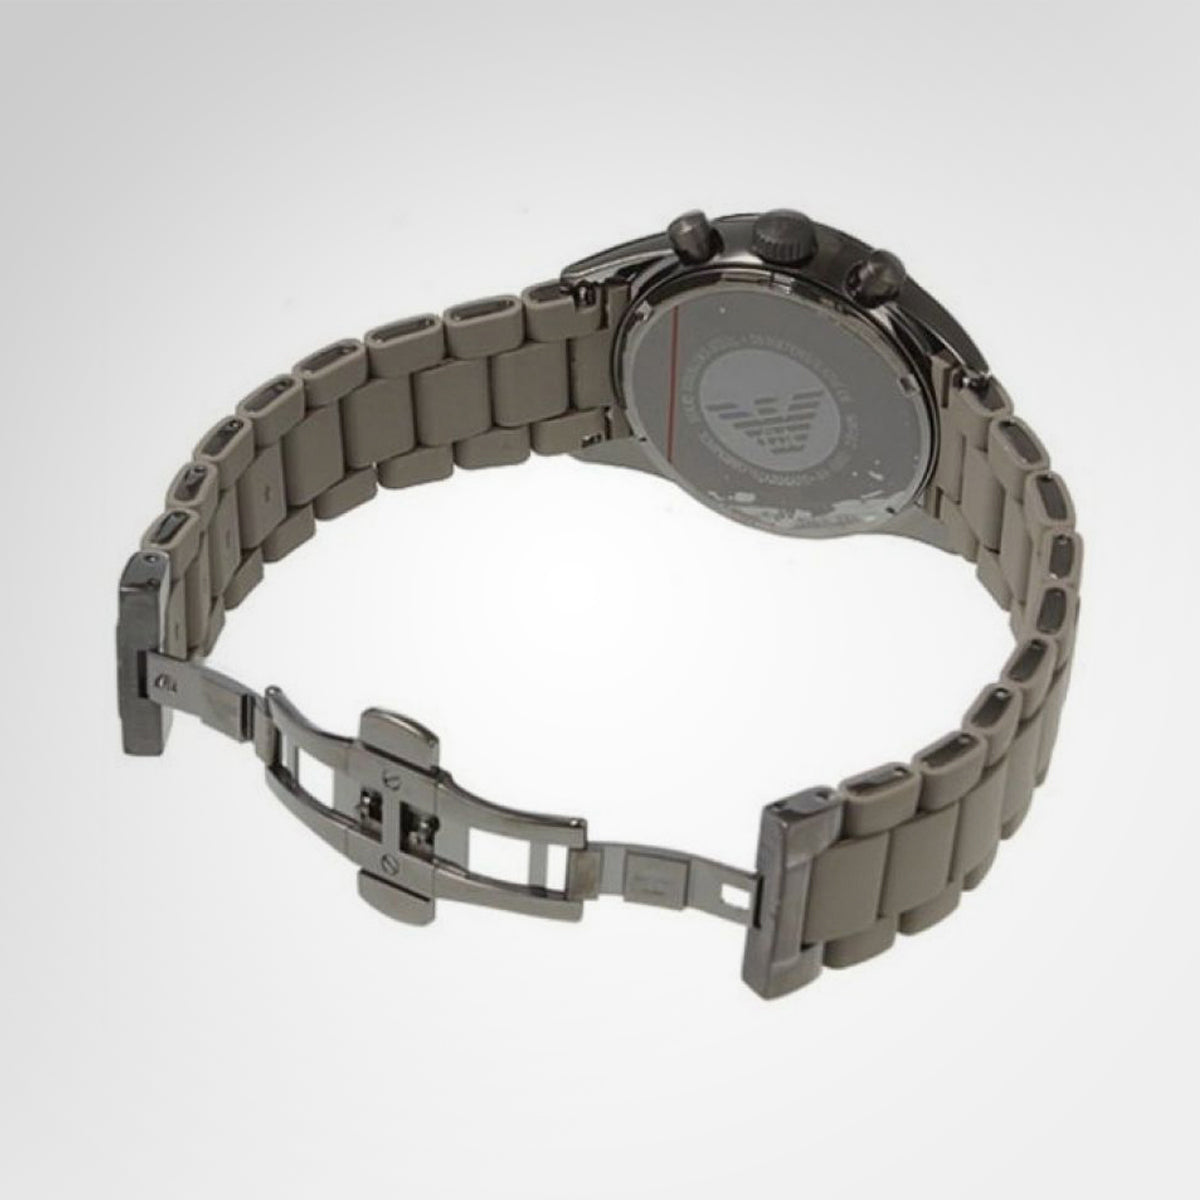 ar5950 armani watch